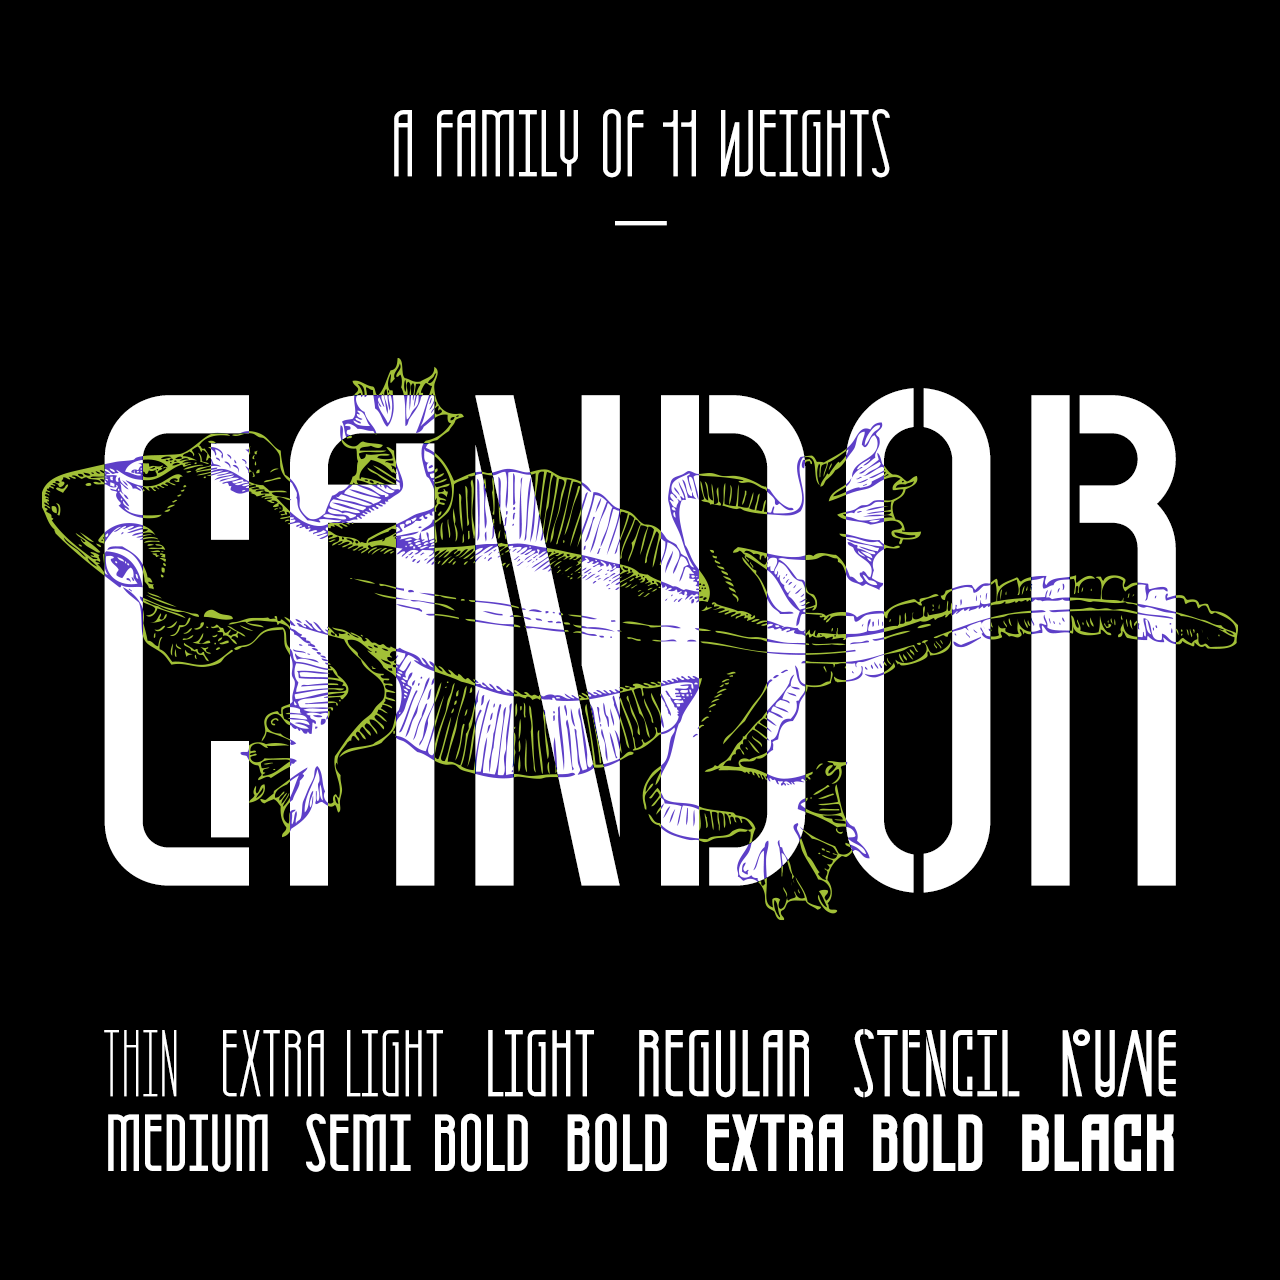 Candor-gumroad-v3